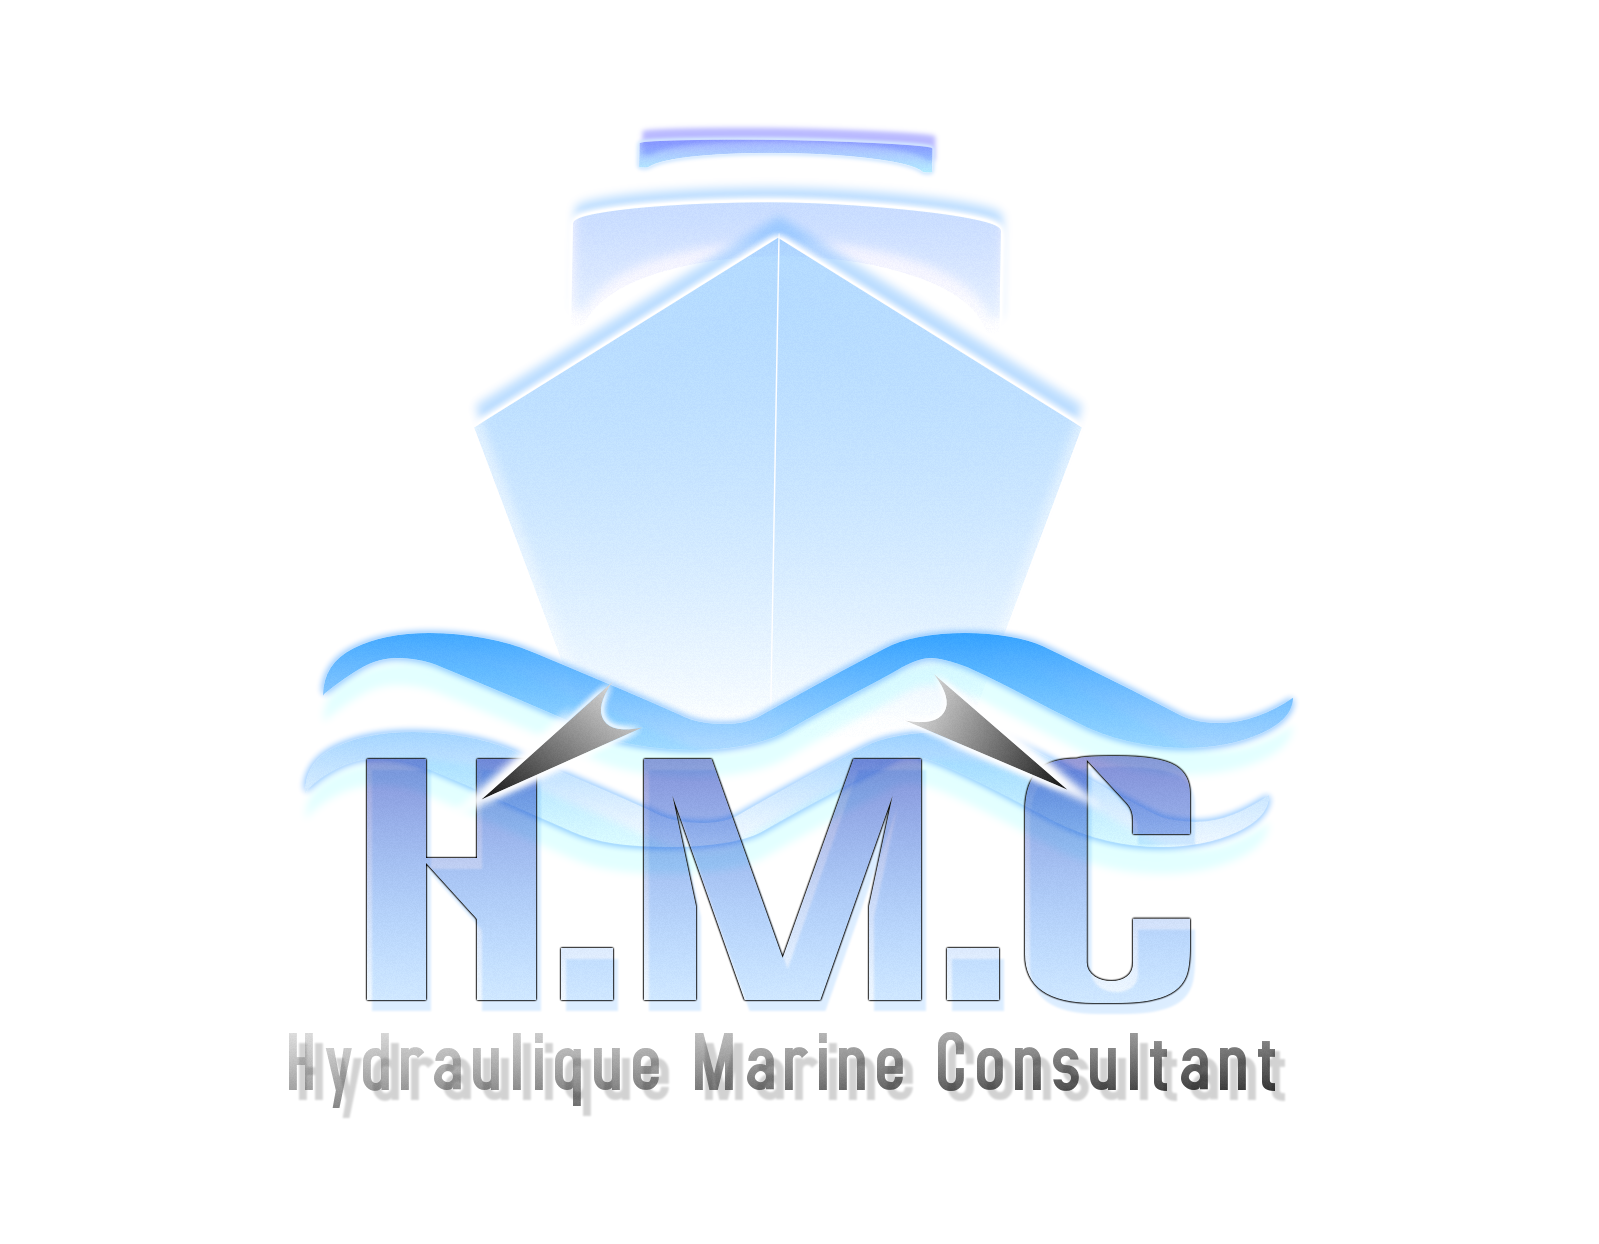 Hydraulique Marine Consultant